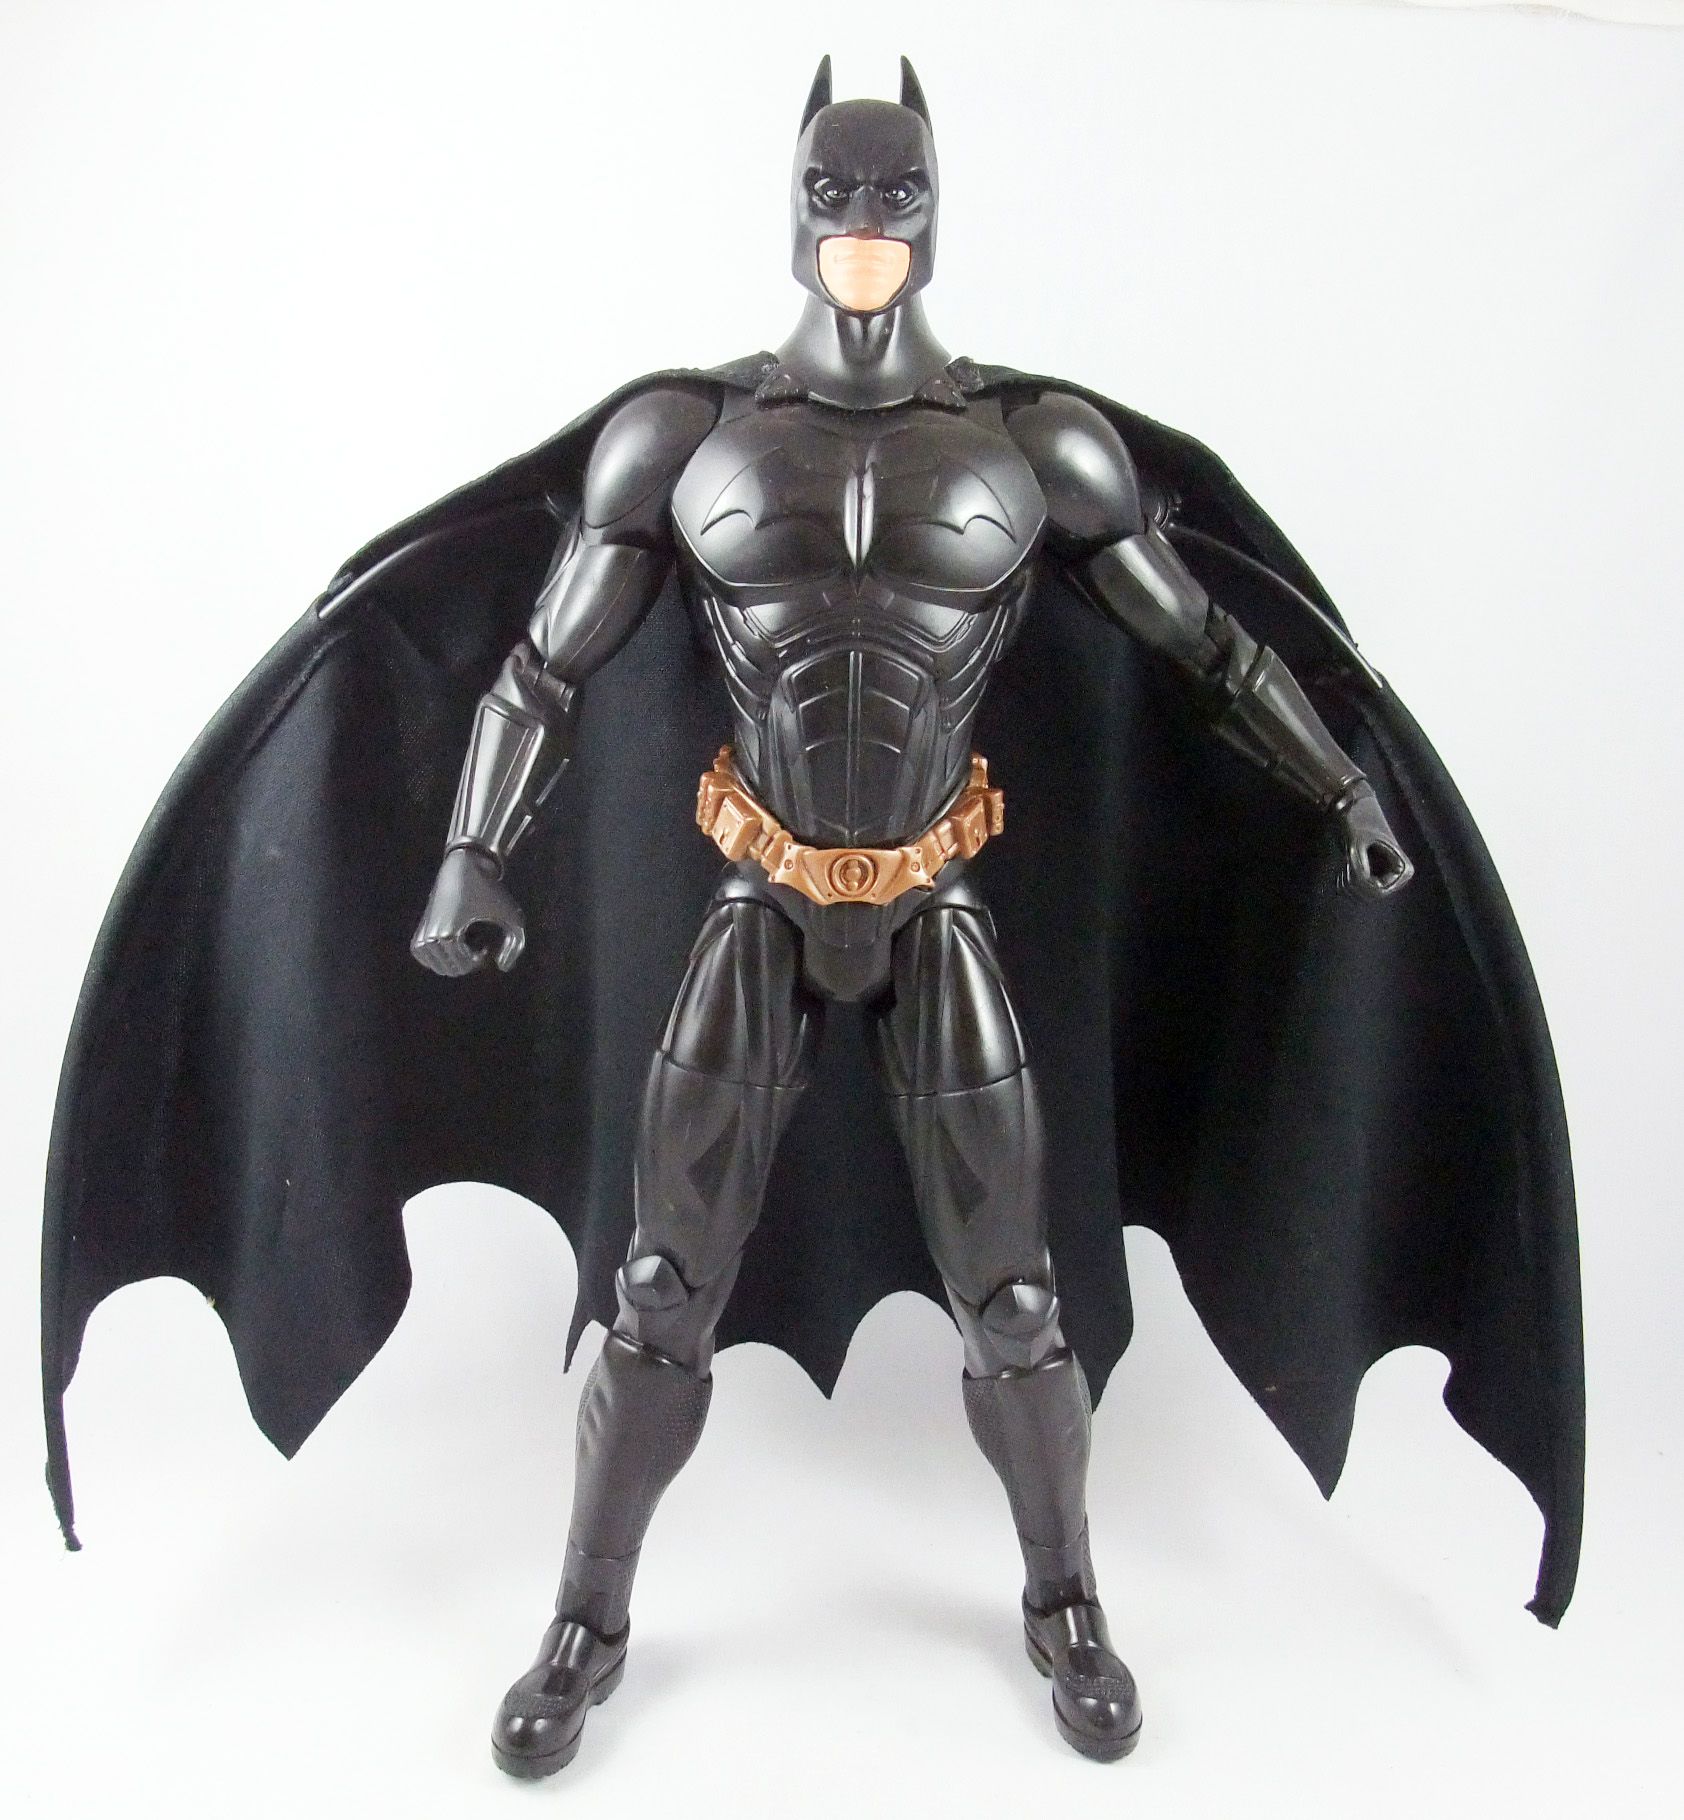 Batman cape. Акция Бэтмен. Batman begins Figure.